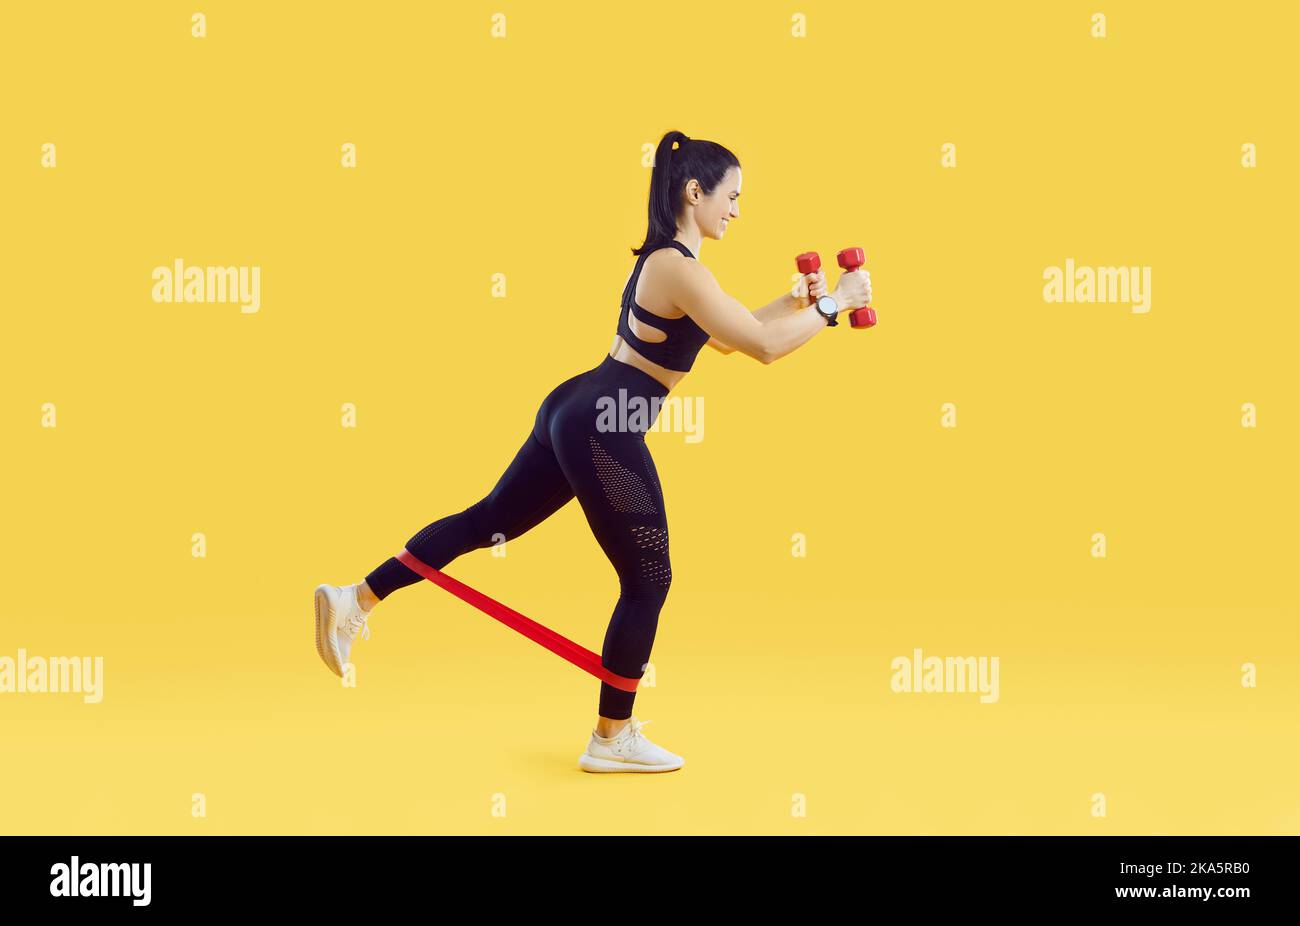 Sport-allenarsi con nastro elastico e manubri su fondo giallo brillante. Foto Stock